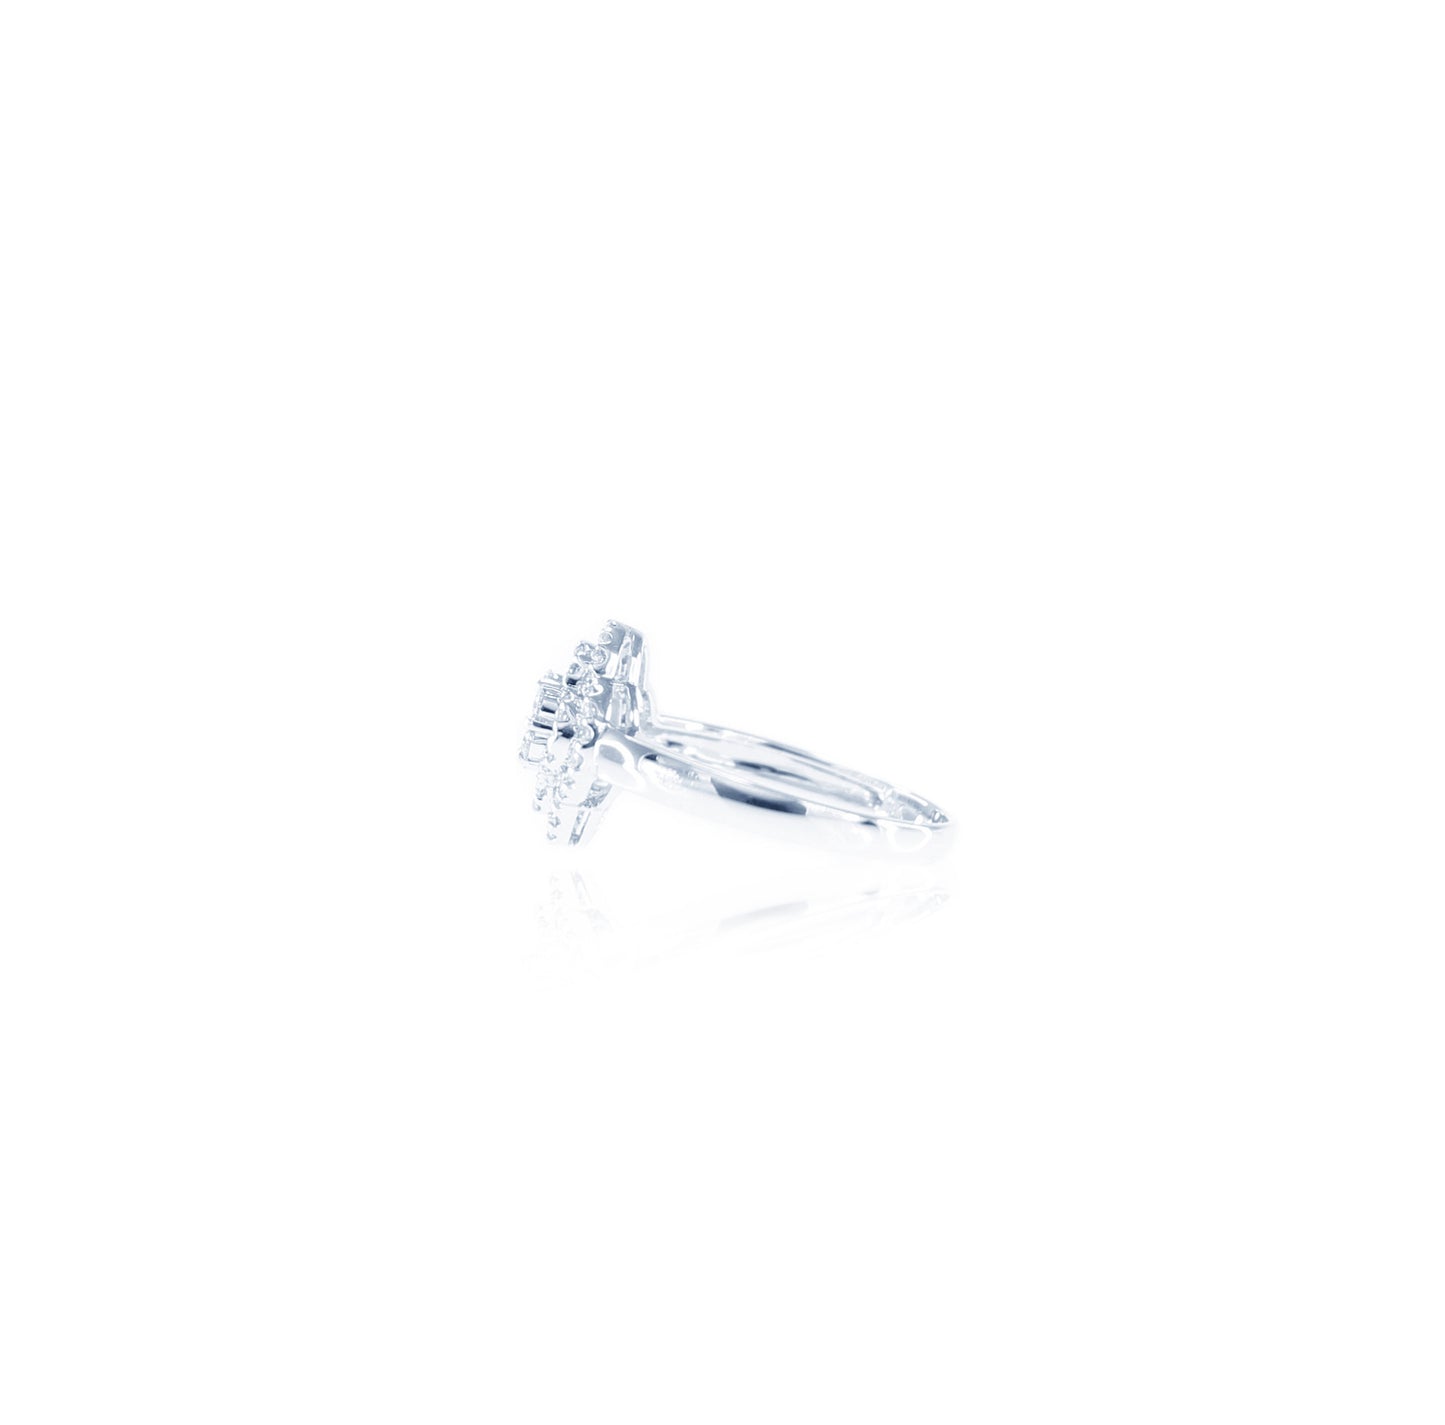 Elegant and Magical Flower Diamond Ring in 18K White Gold